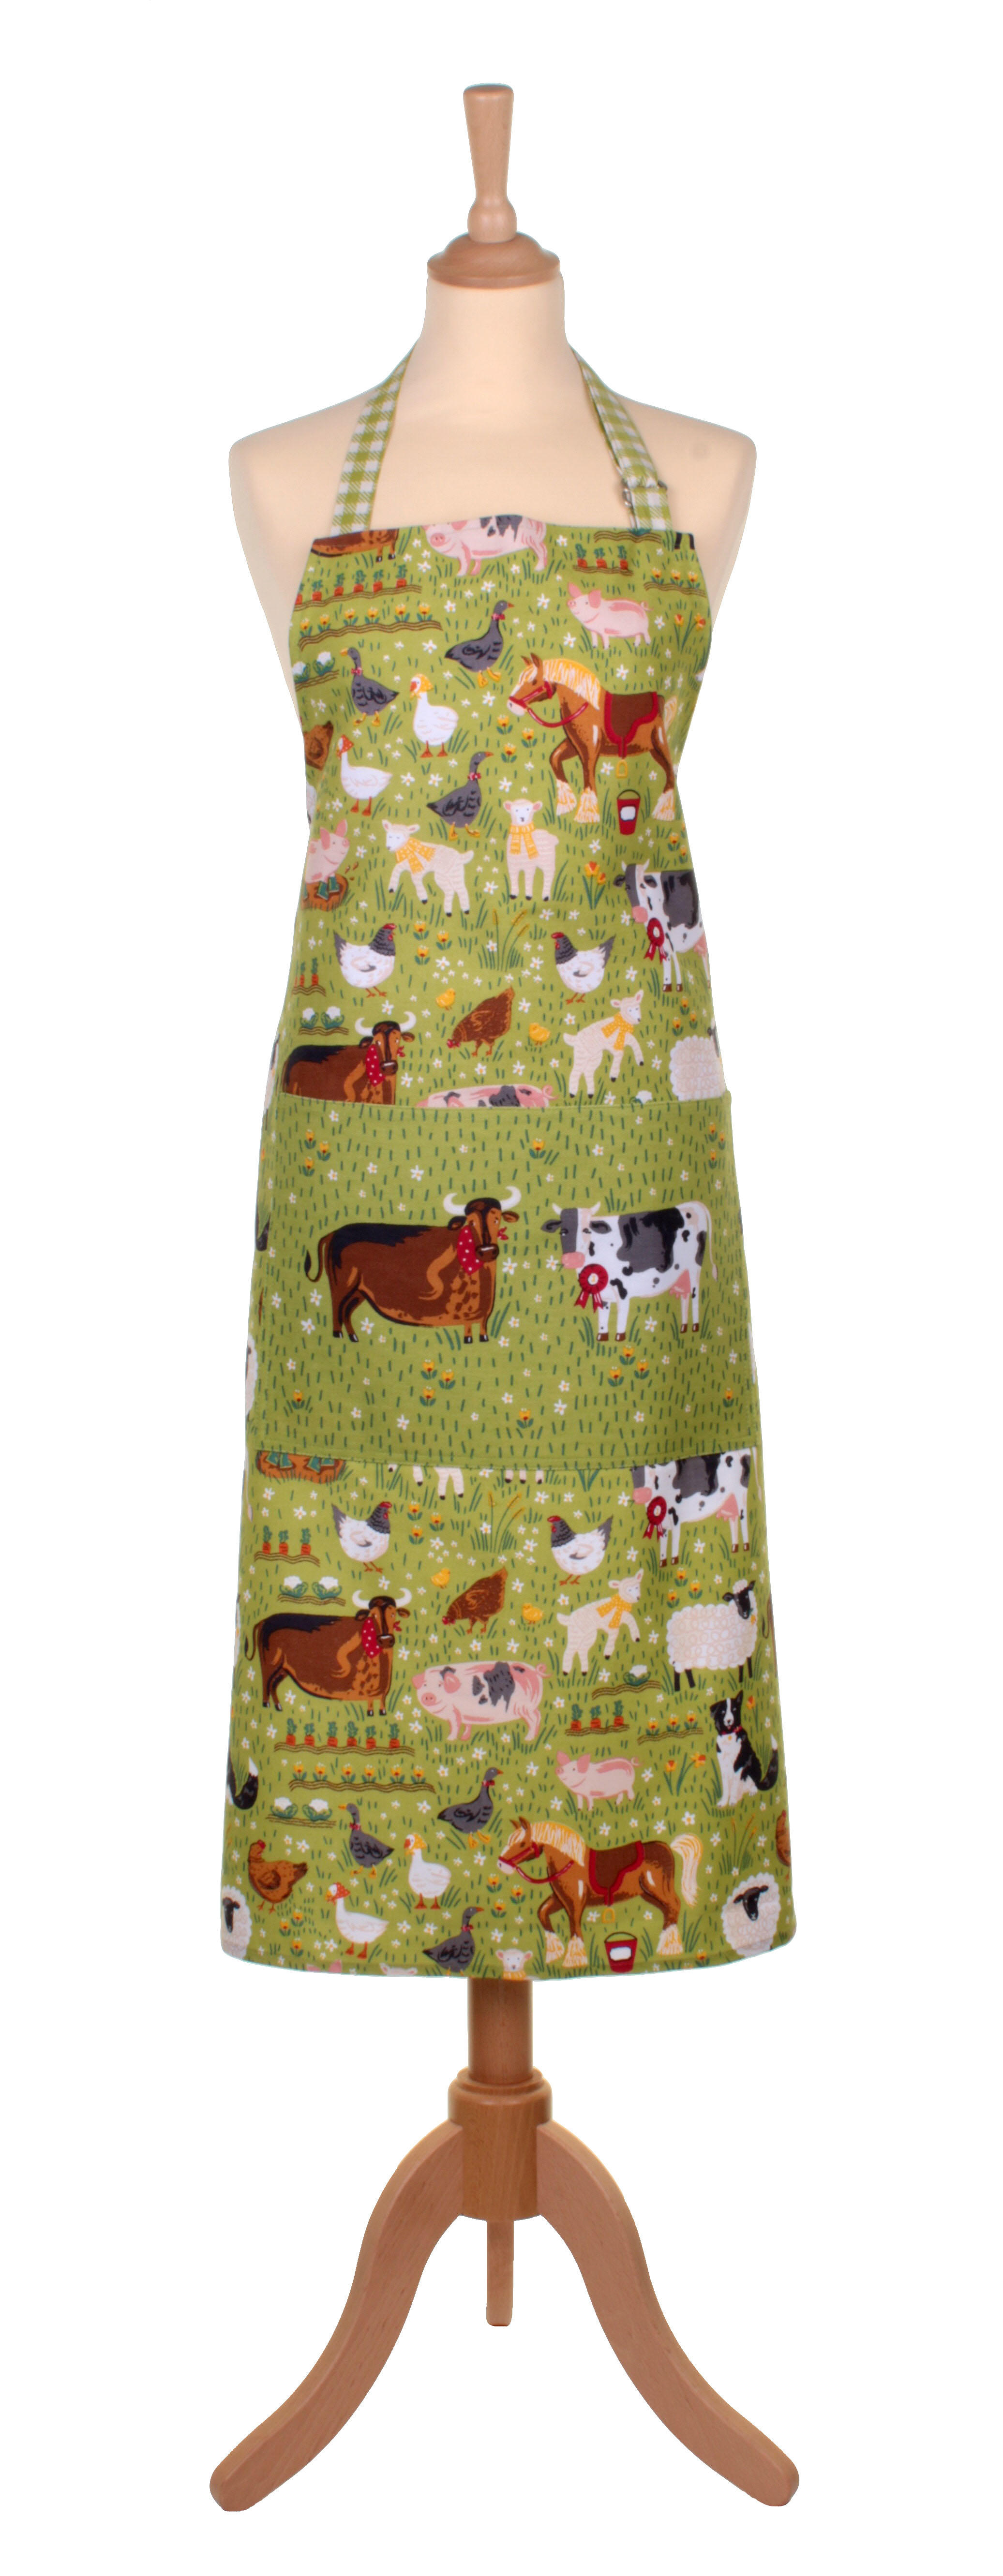 Jennie's Farm cotton apron